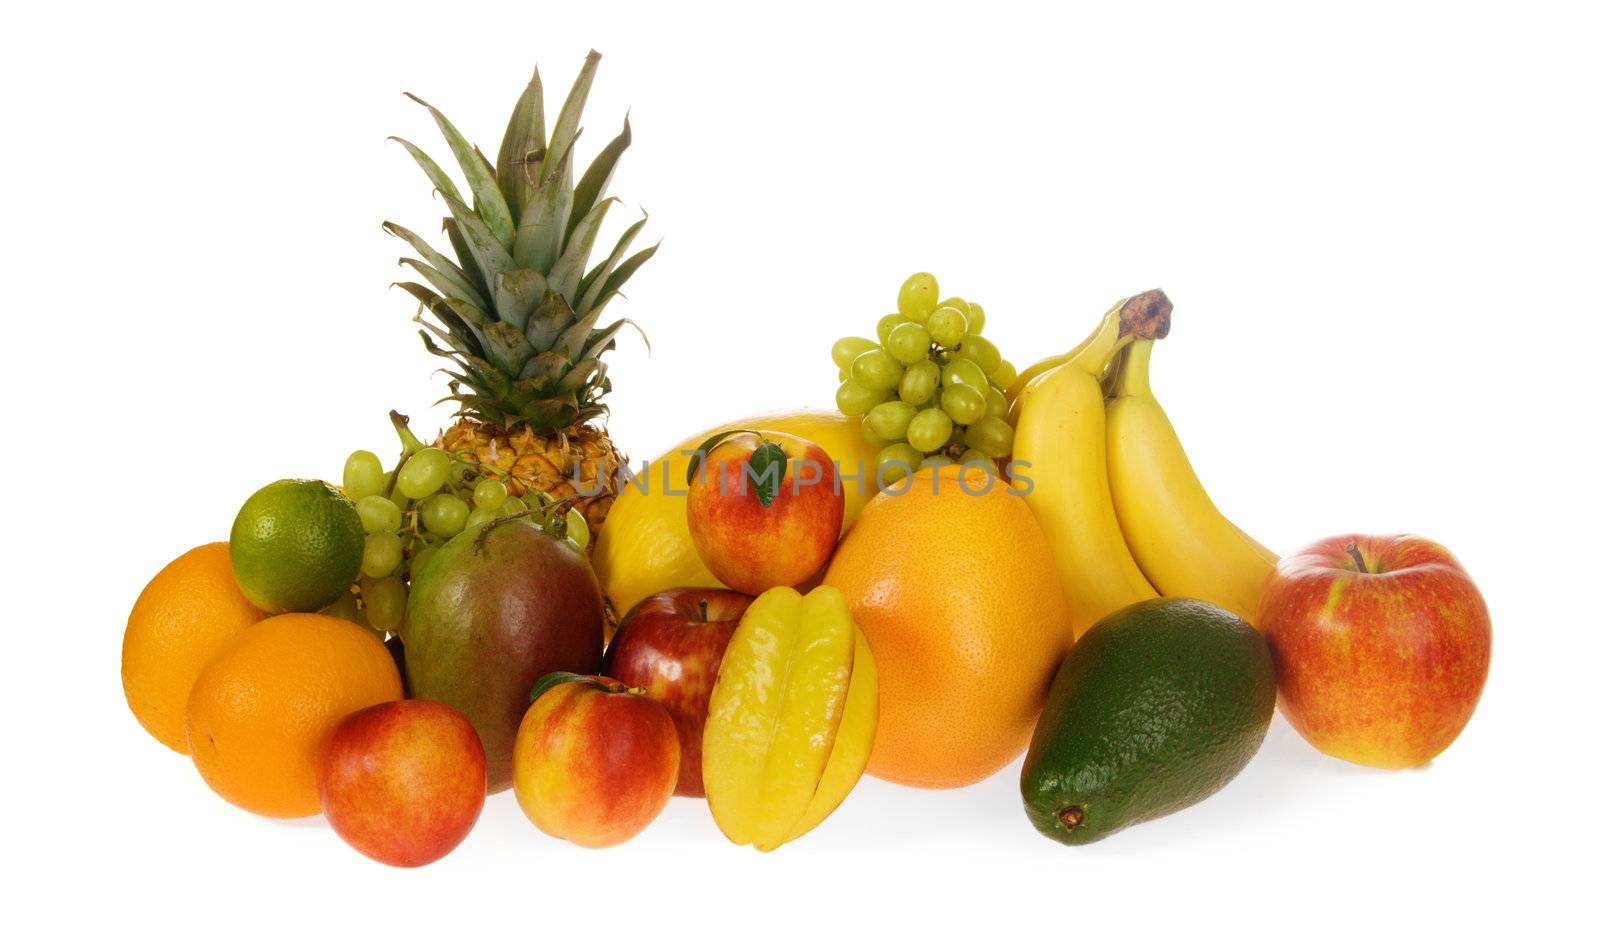 Assortment of exotic fruits by Gdolgikh